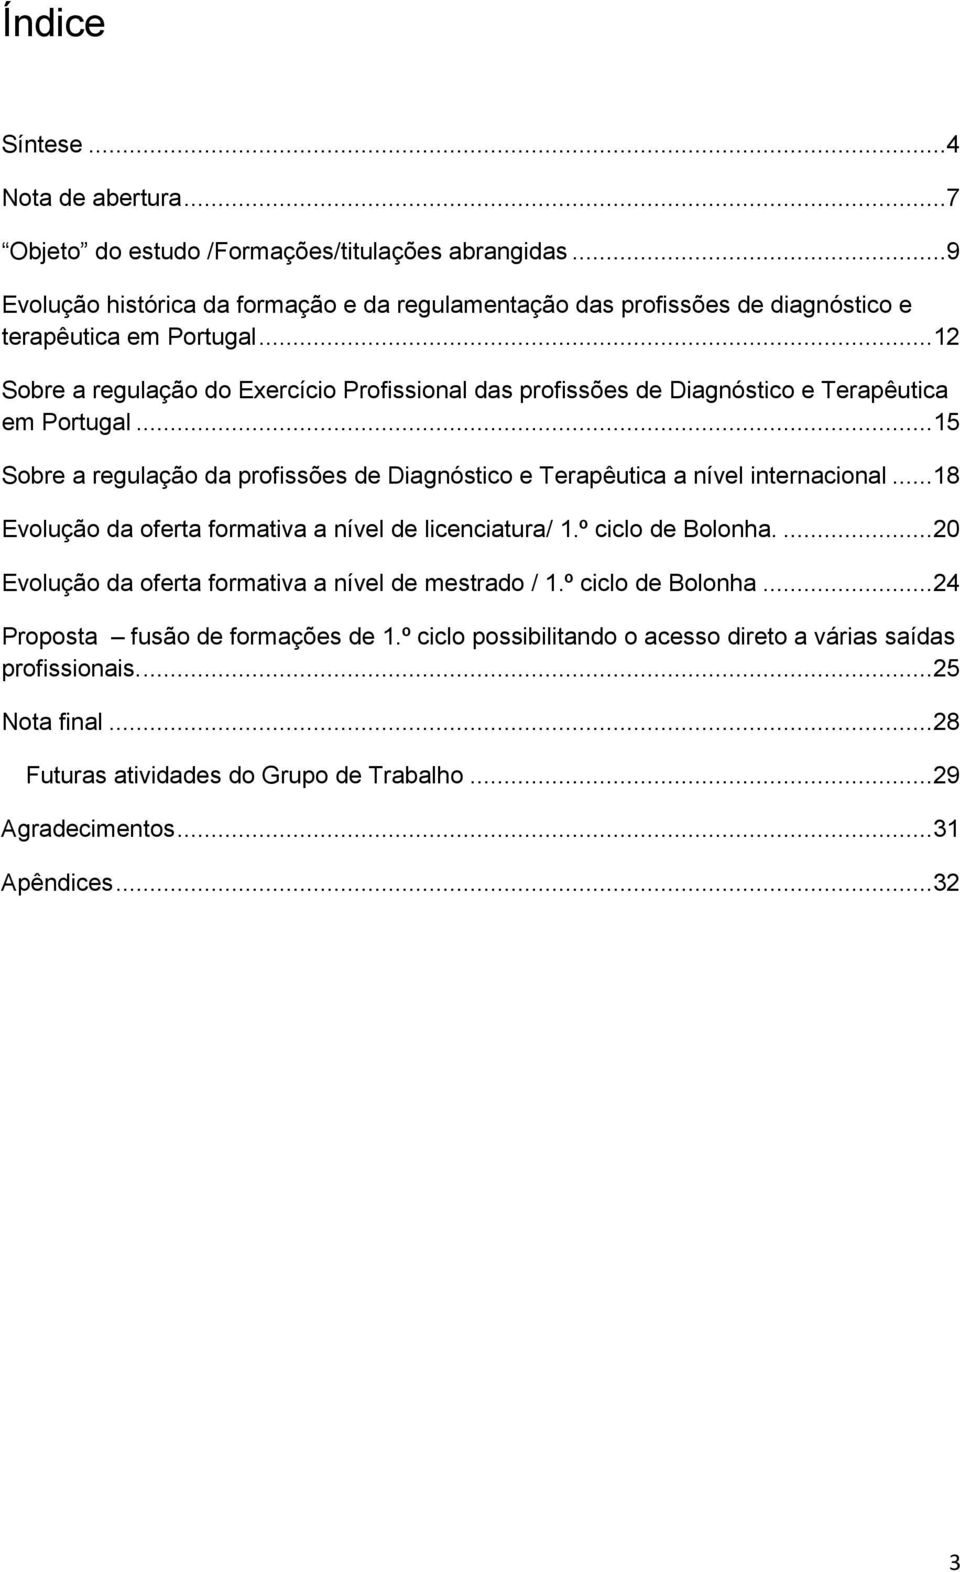 .. 12 Sobre a regulação do Exercício Profissional das profissões de Diagnóstico e Terapêutica em Portugal... 15 Sobre a regulação da profissões de Diagnóstico e Terapêutica a nível internacional.